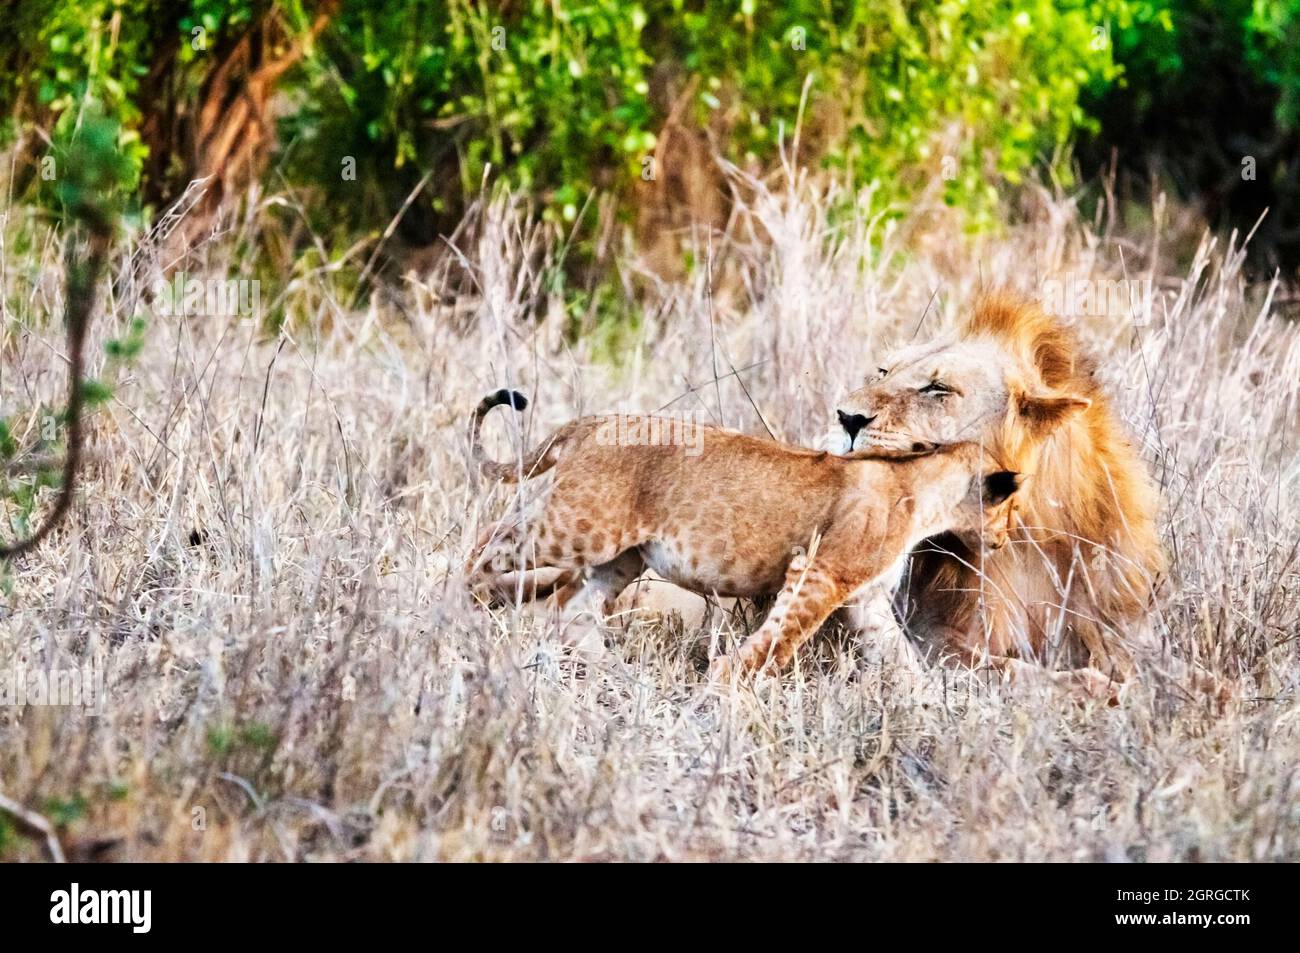 Kenya, parc national de Tsavo West, un lion mâle (Panthera leo) dans la brousse et son cub Banque D'Images